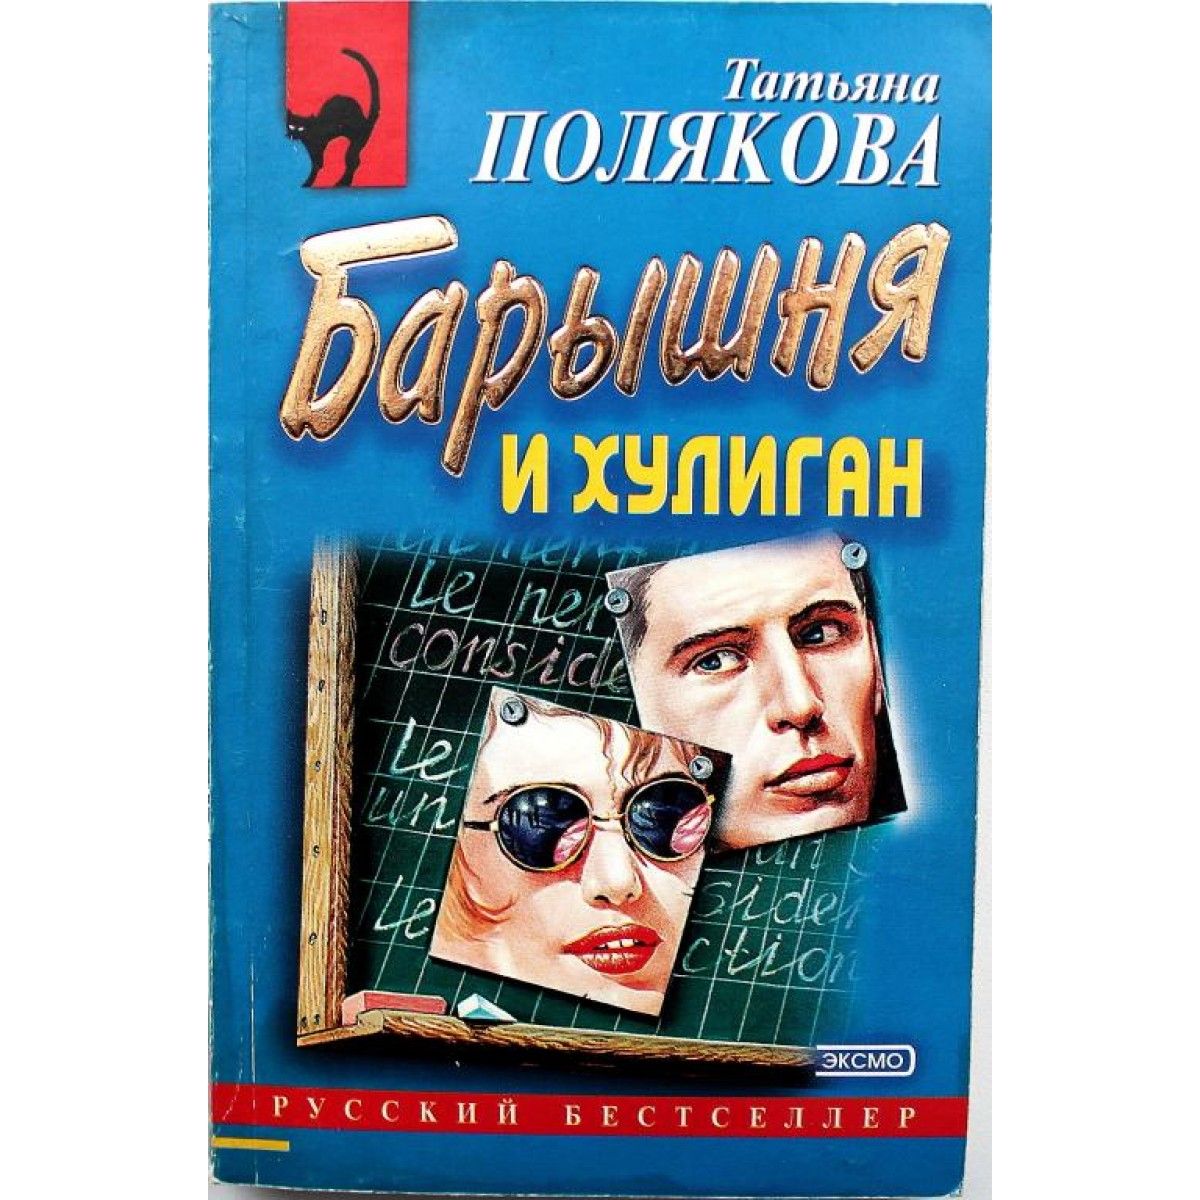 Читать т полякову. Барышня и хулиган Полякова. Книга хулиганский детектив.